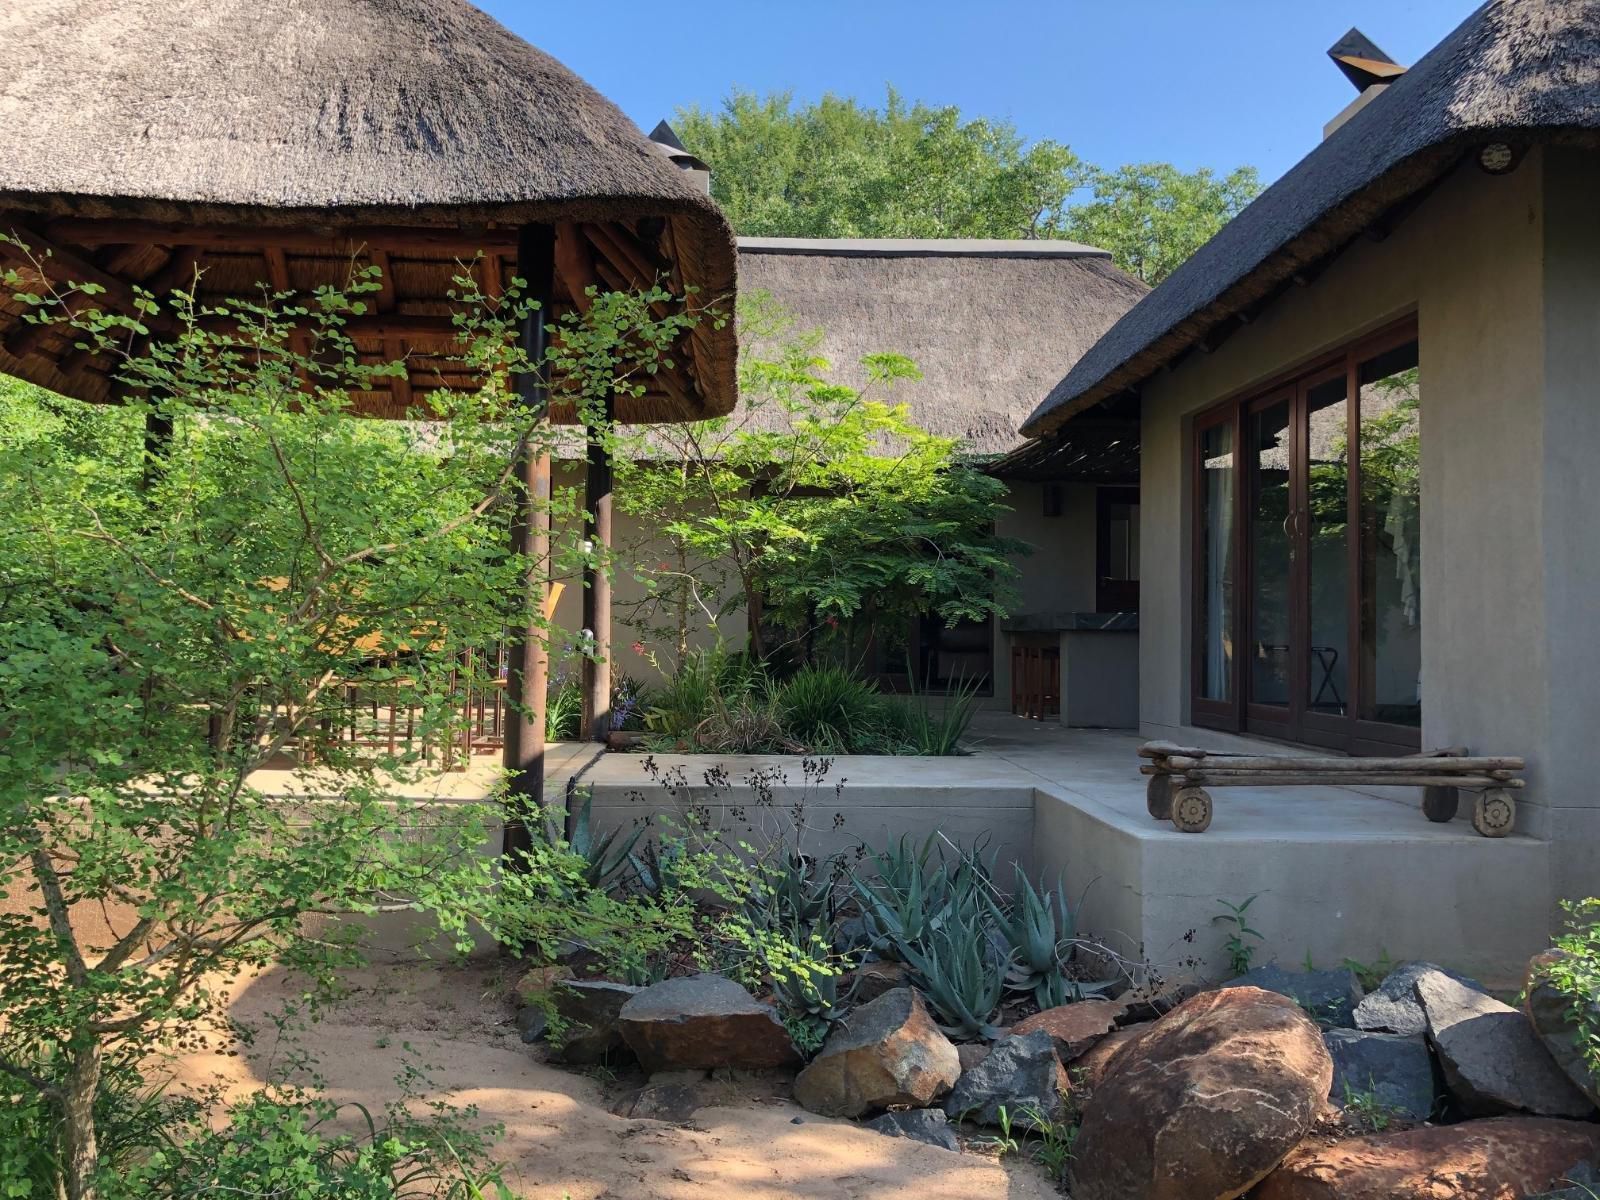 11 Raptors Lodge Hoedspruit Limpopo Province South Africa House, Building, Architecture, Garden, Nature, Plant